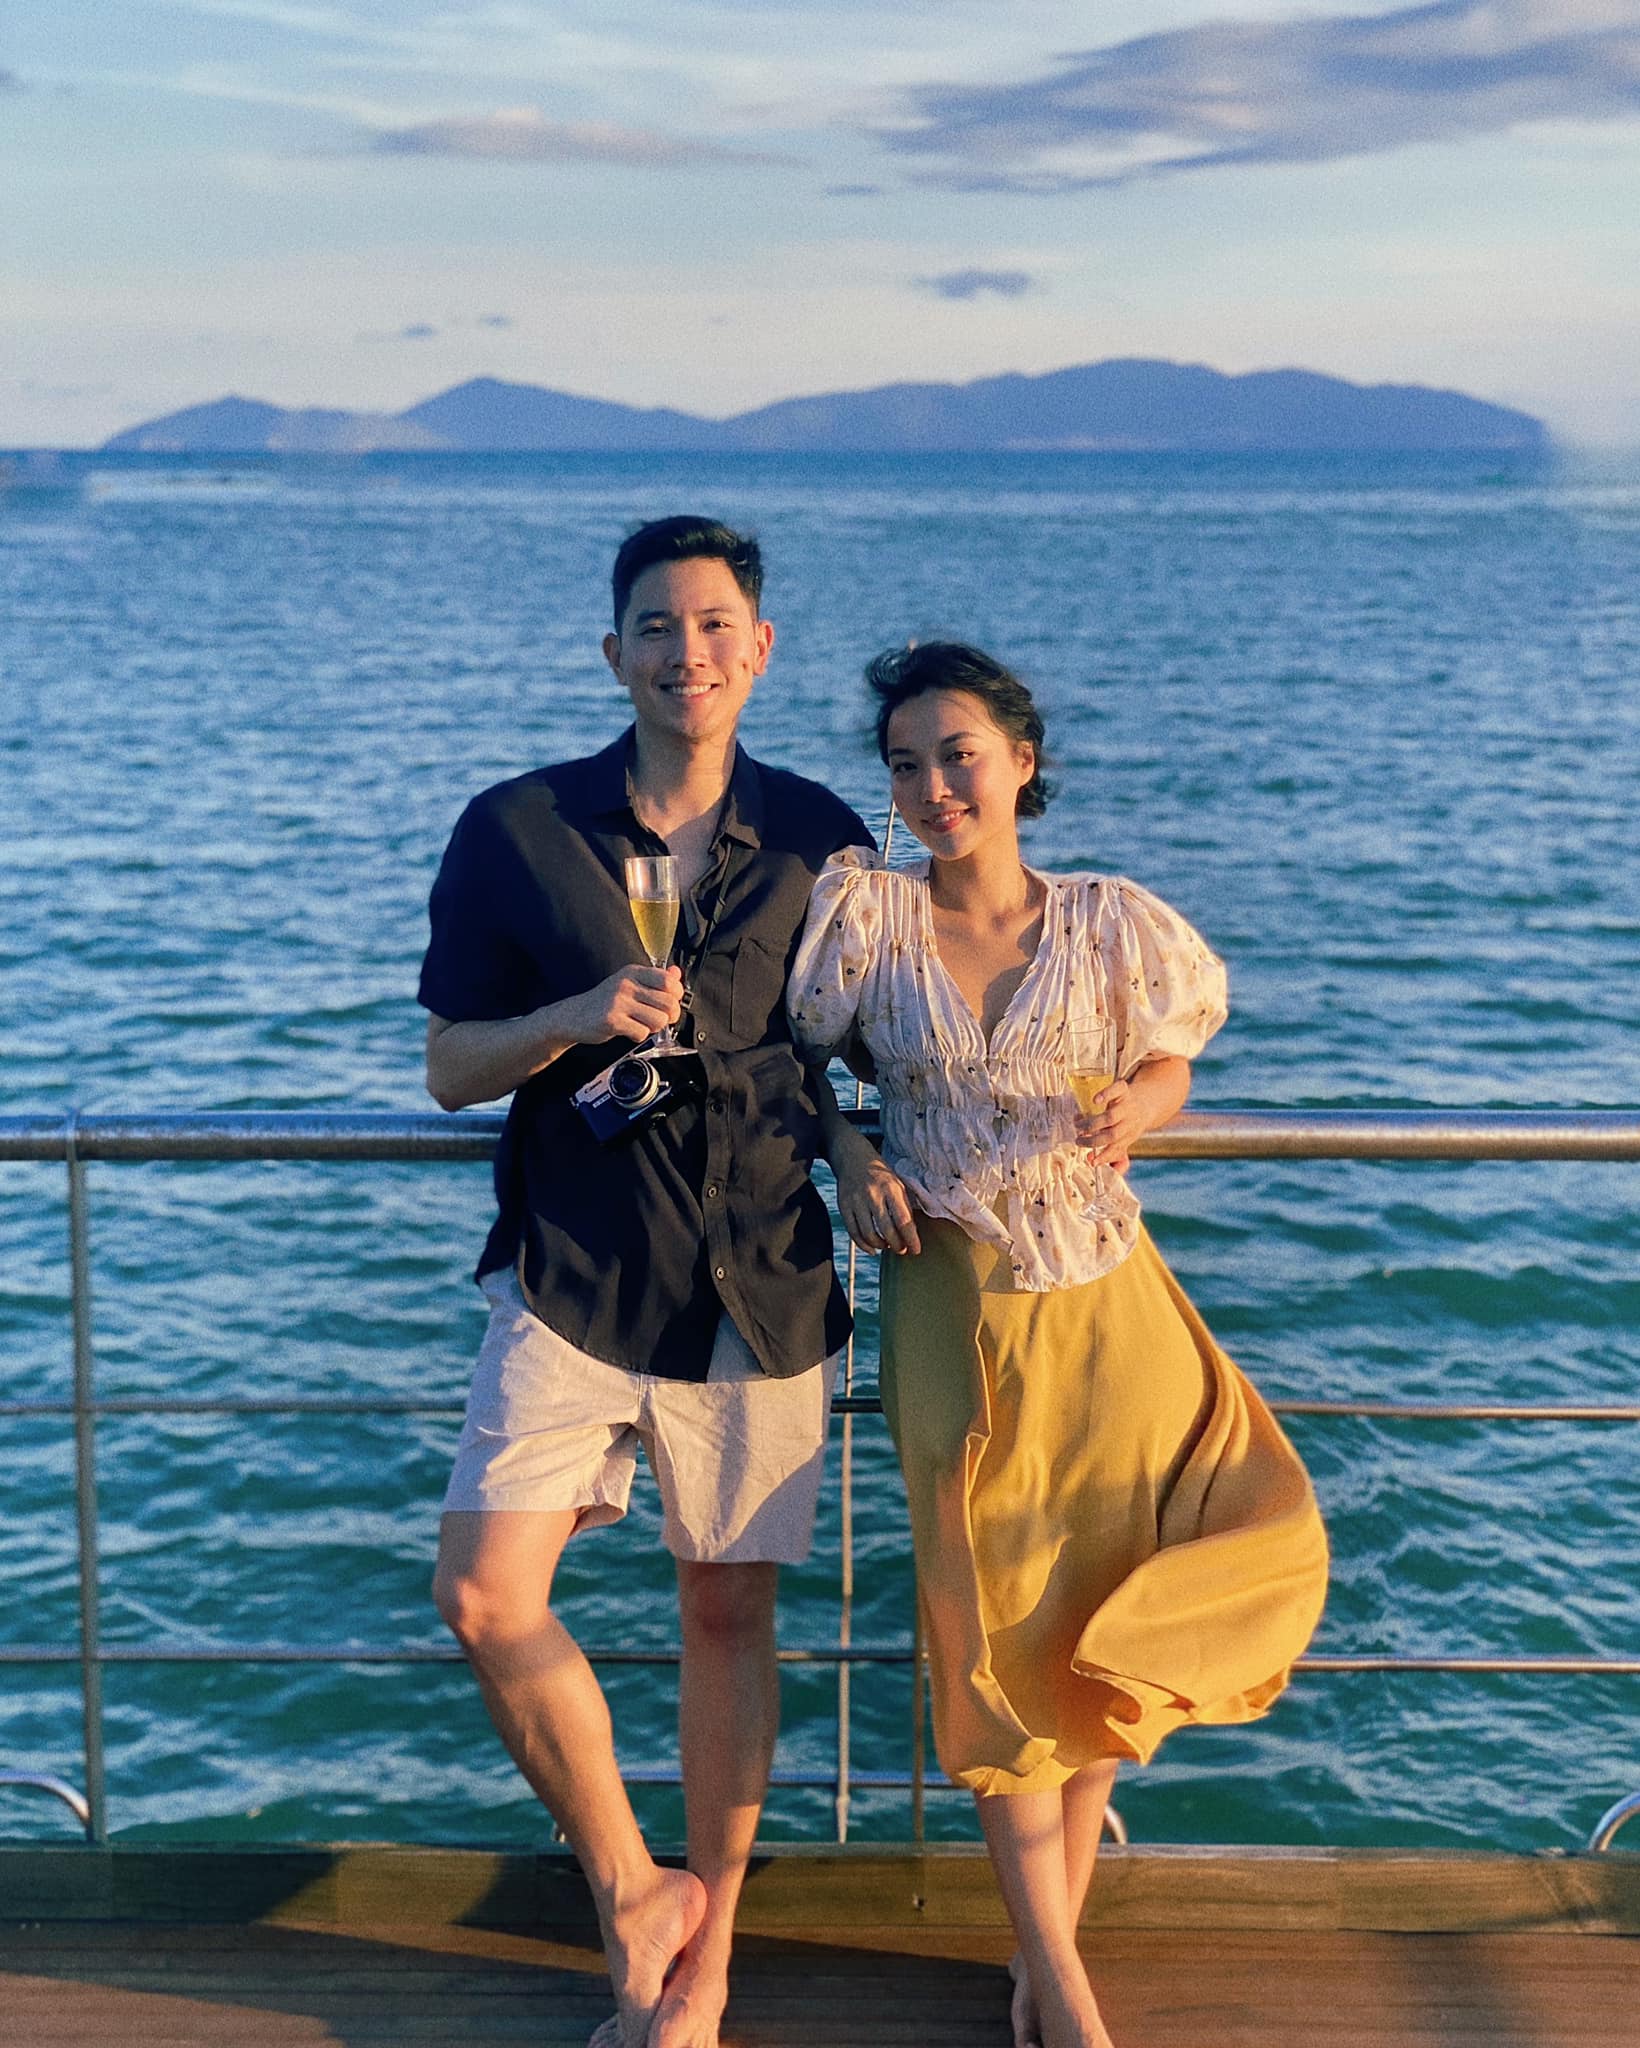 Để tăng cảm hứng du lịch, điểm danh ngay tài khoản Instagram các cặp đôi này